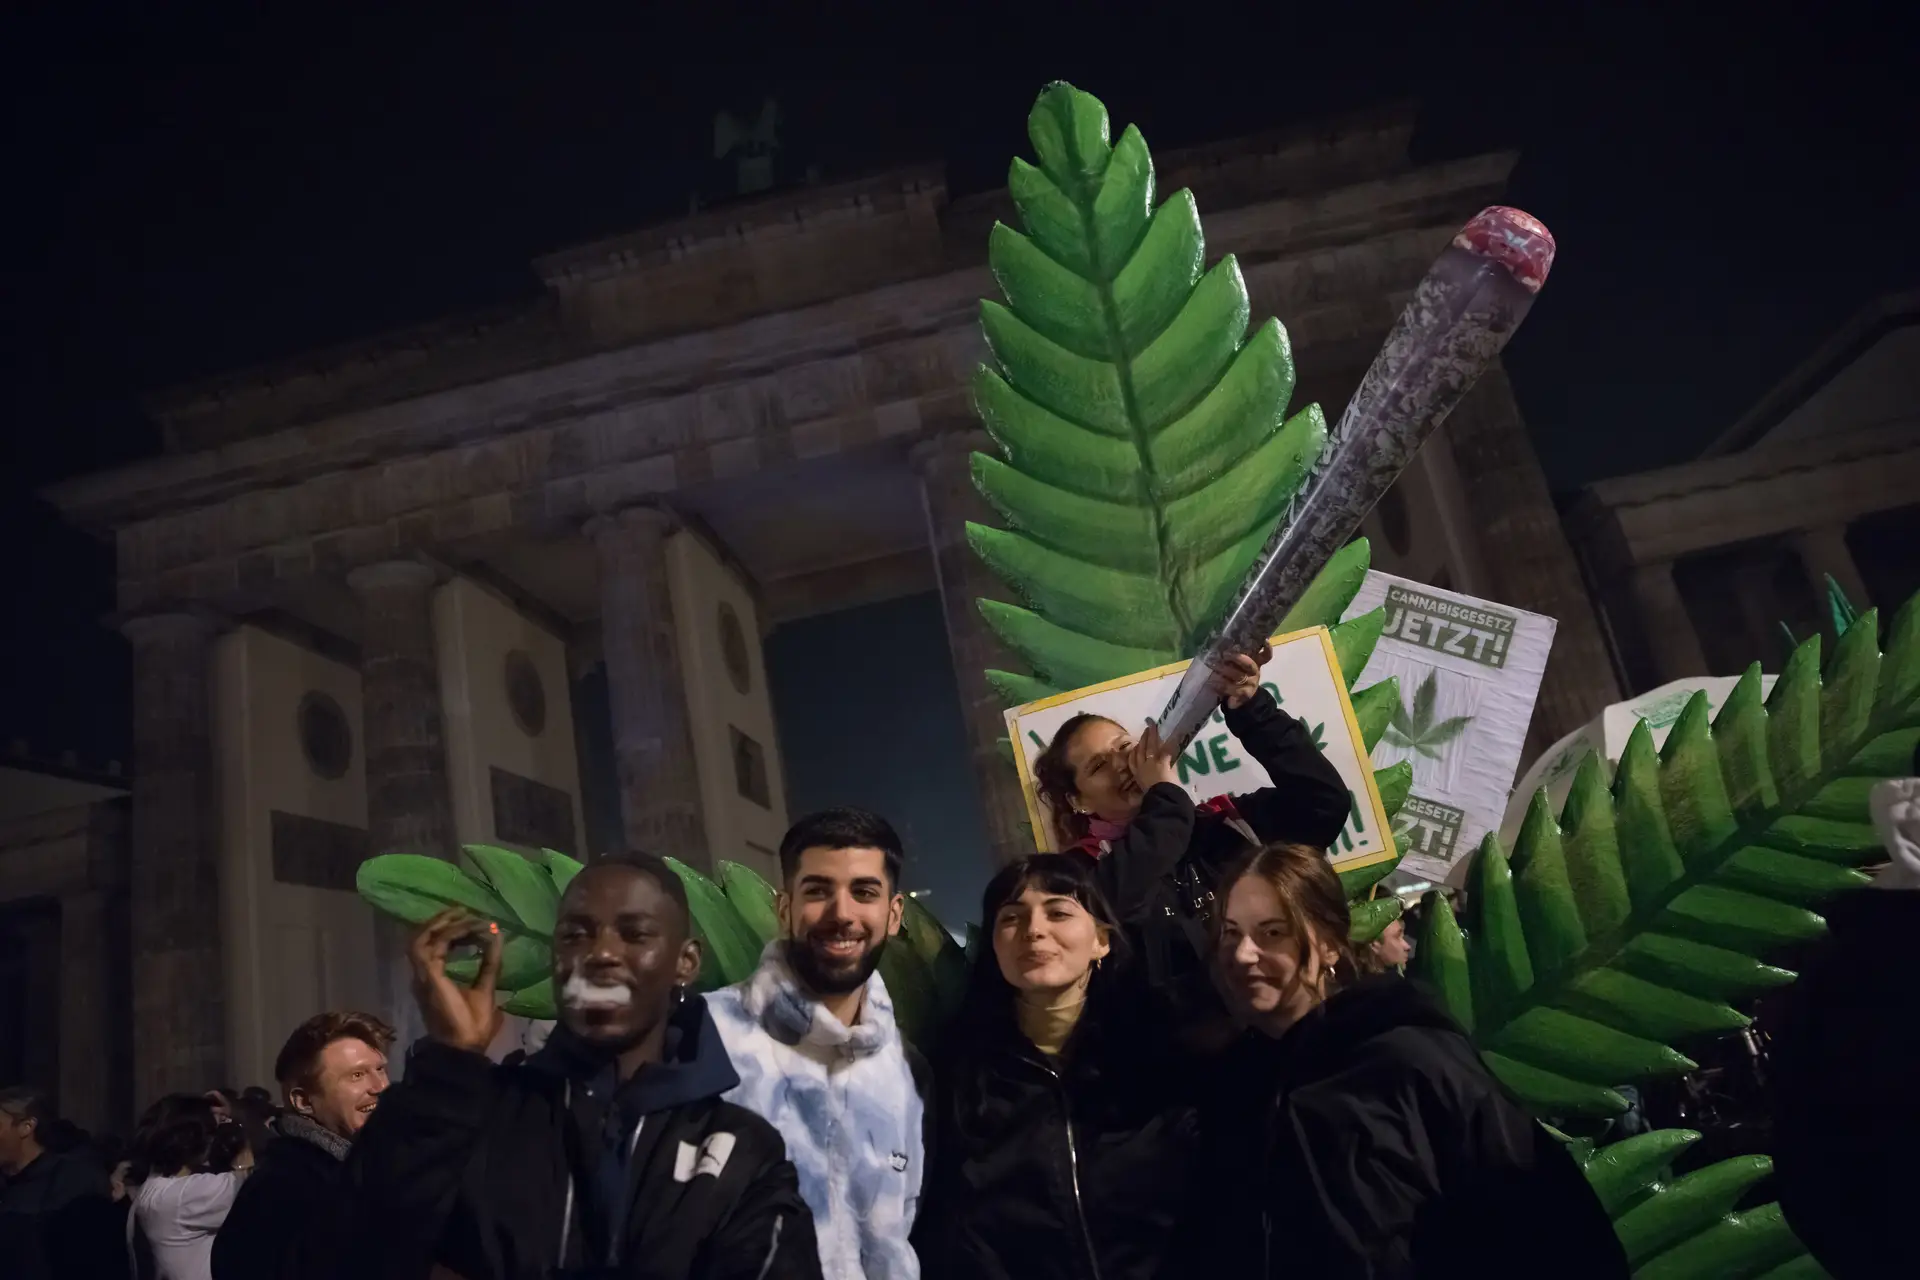 Die deutsche Gesellschaft feiert die Legalisierung des Besitzes und Anbaus von Marihuana